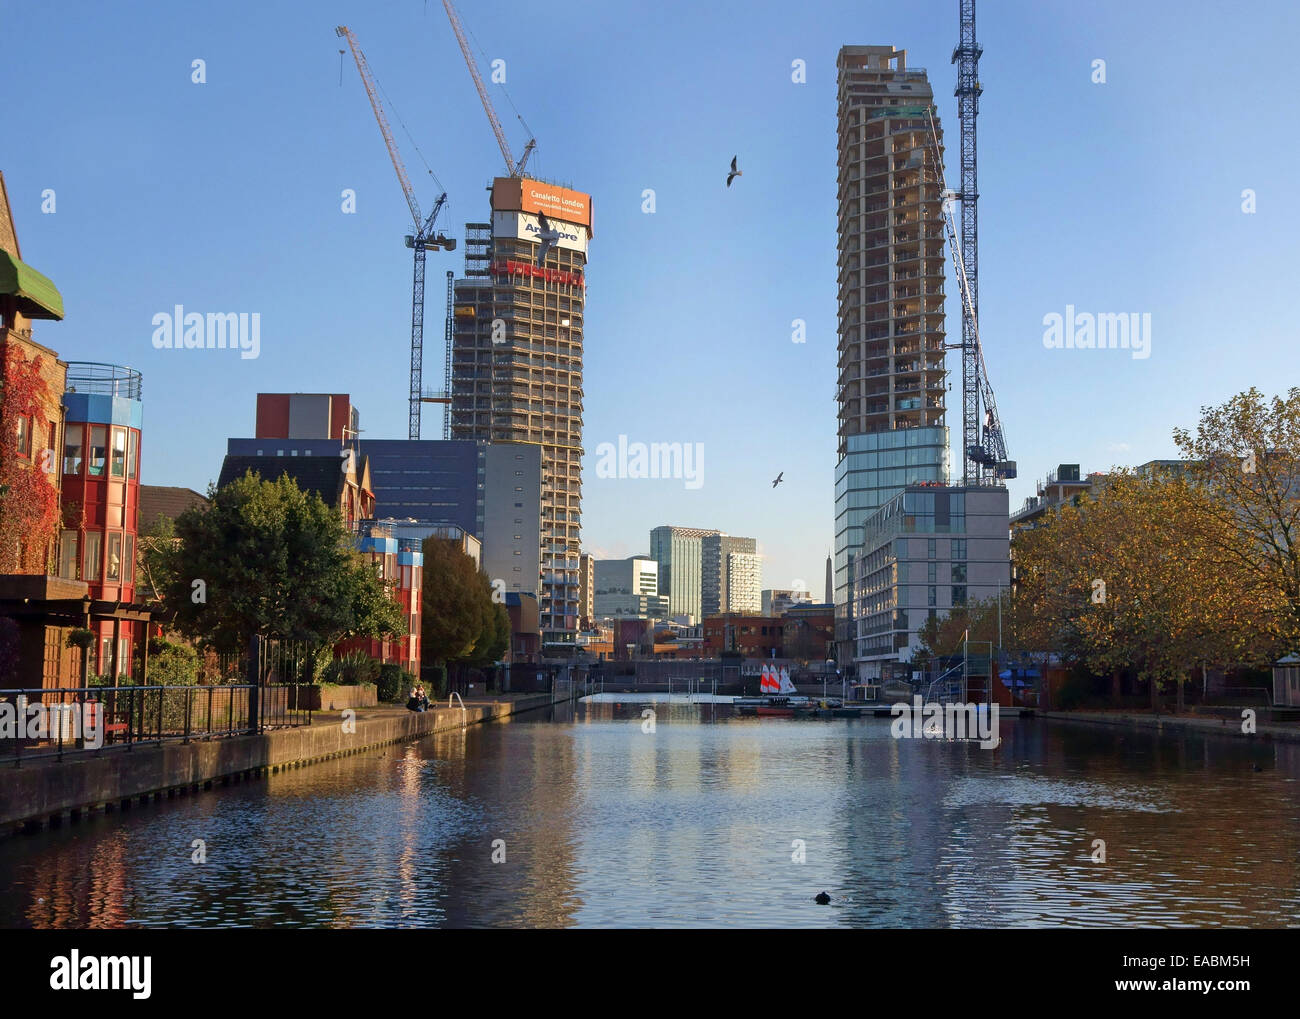 Canaletto (L) und Lexikon Luxus Wohnungen Entwicklungen in Stadt Basin, Islington, London Stockfoto